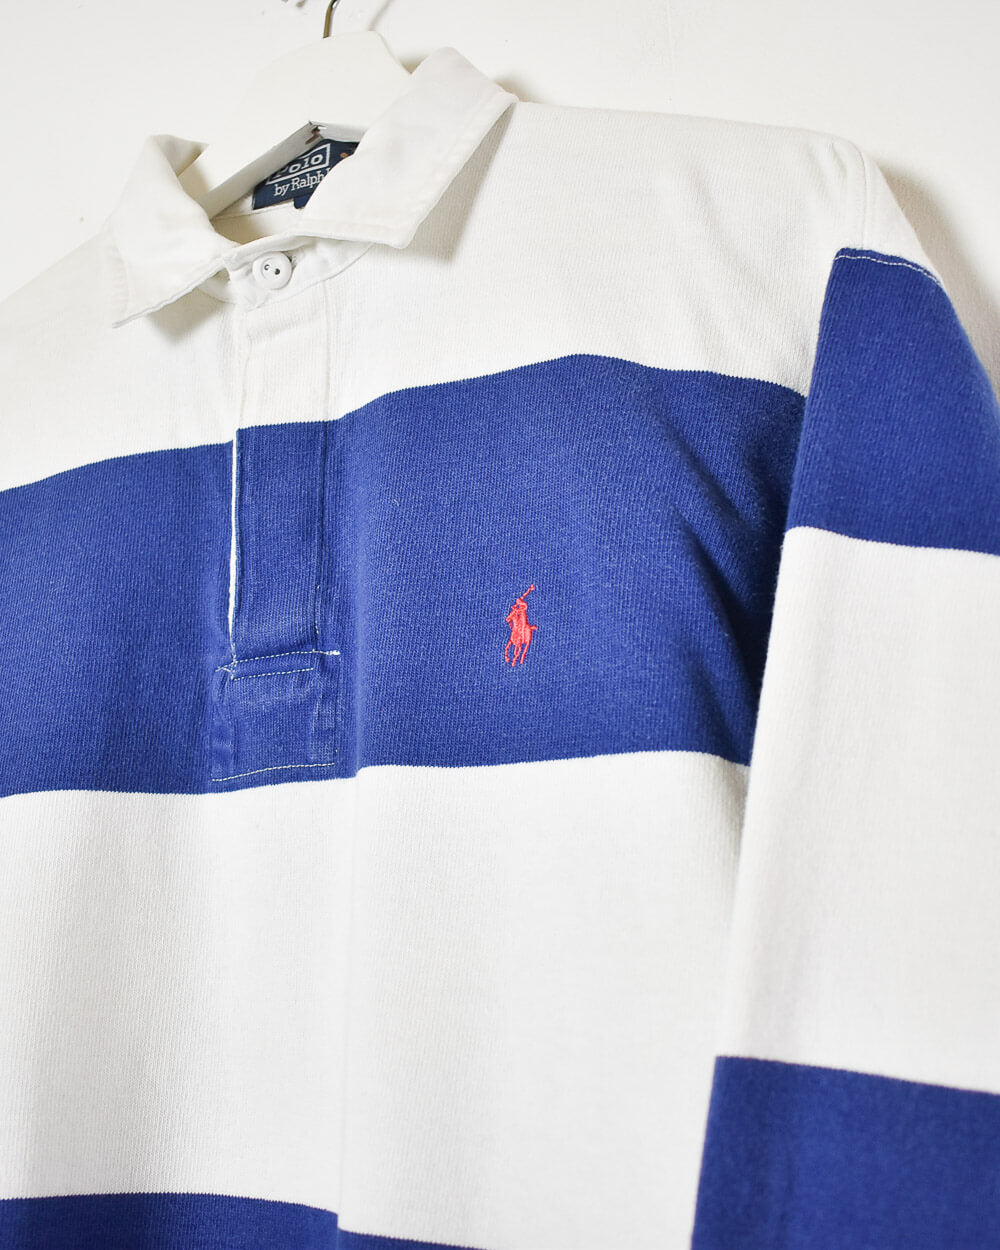 Blue Ralph Lauren Rugby Shirt - Small